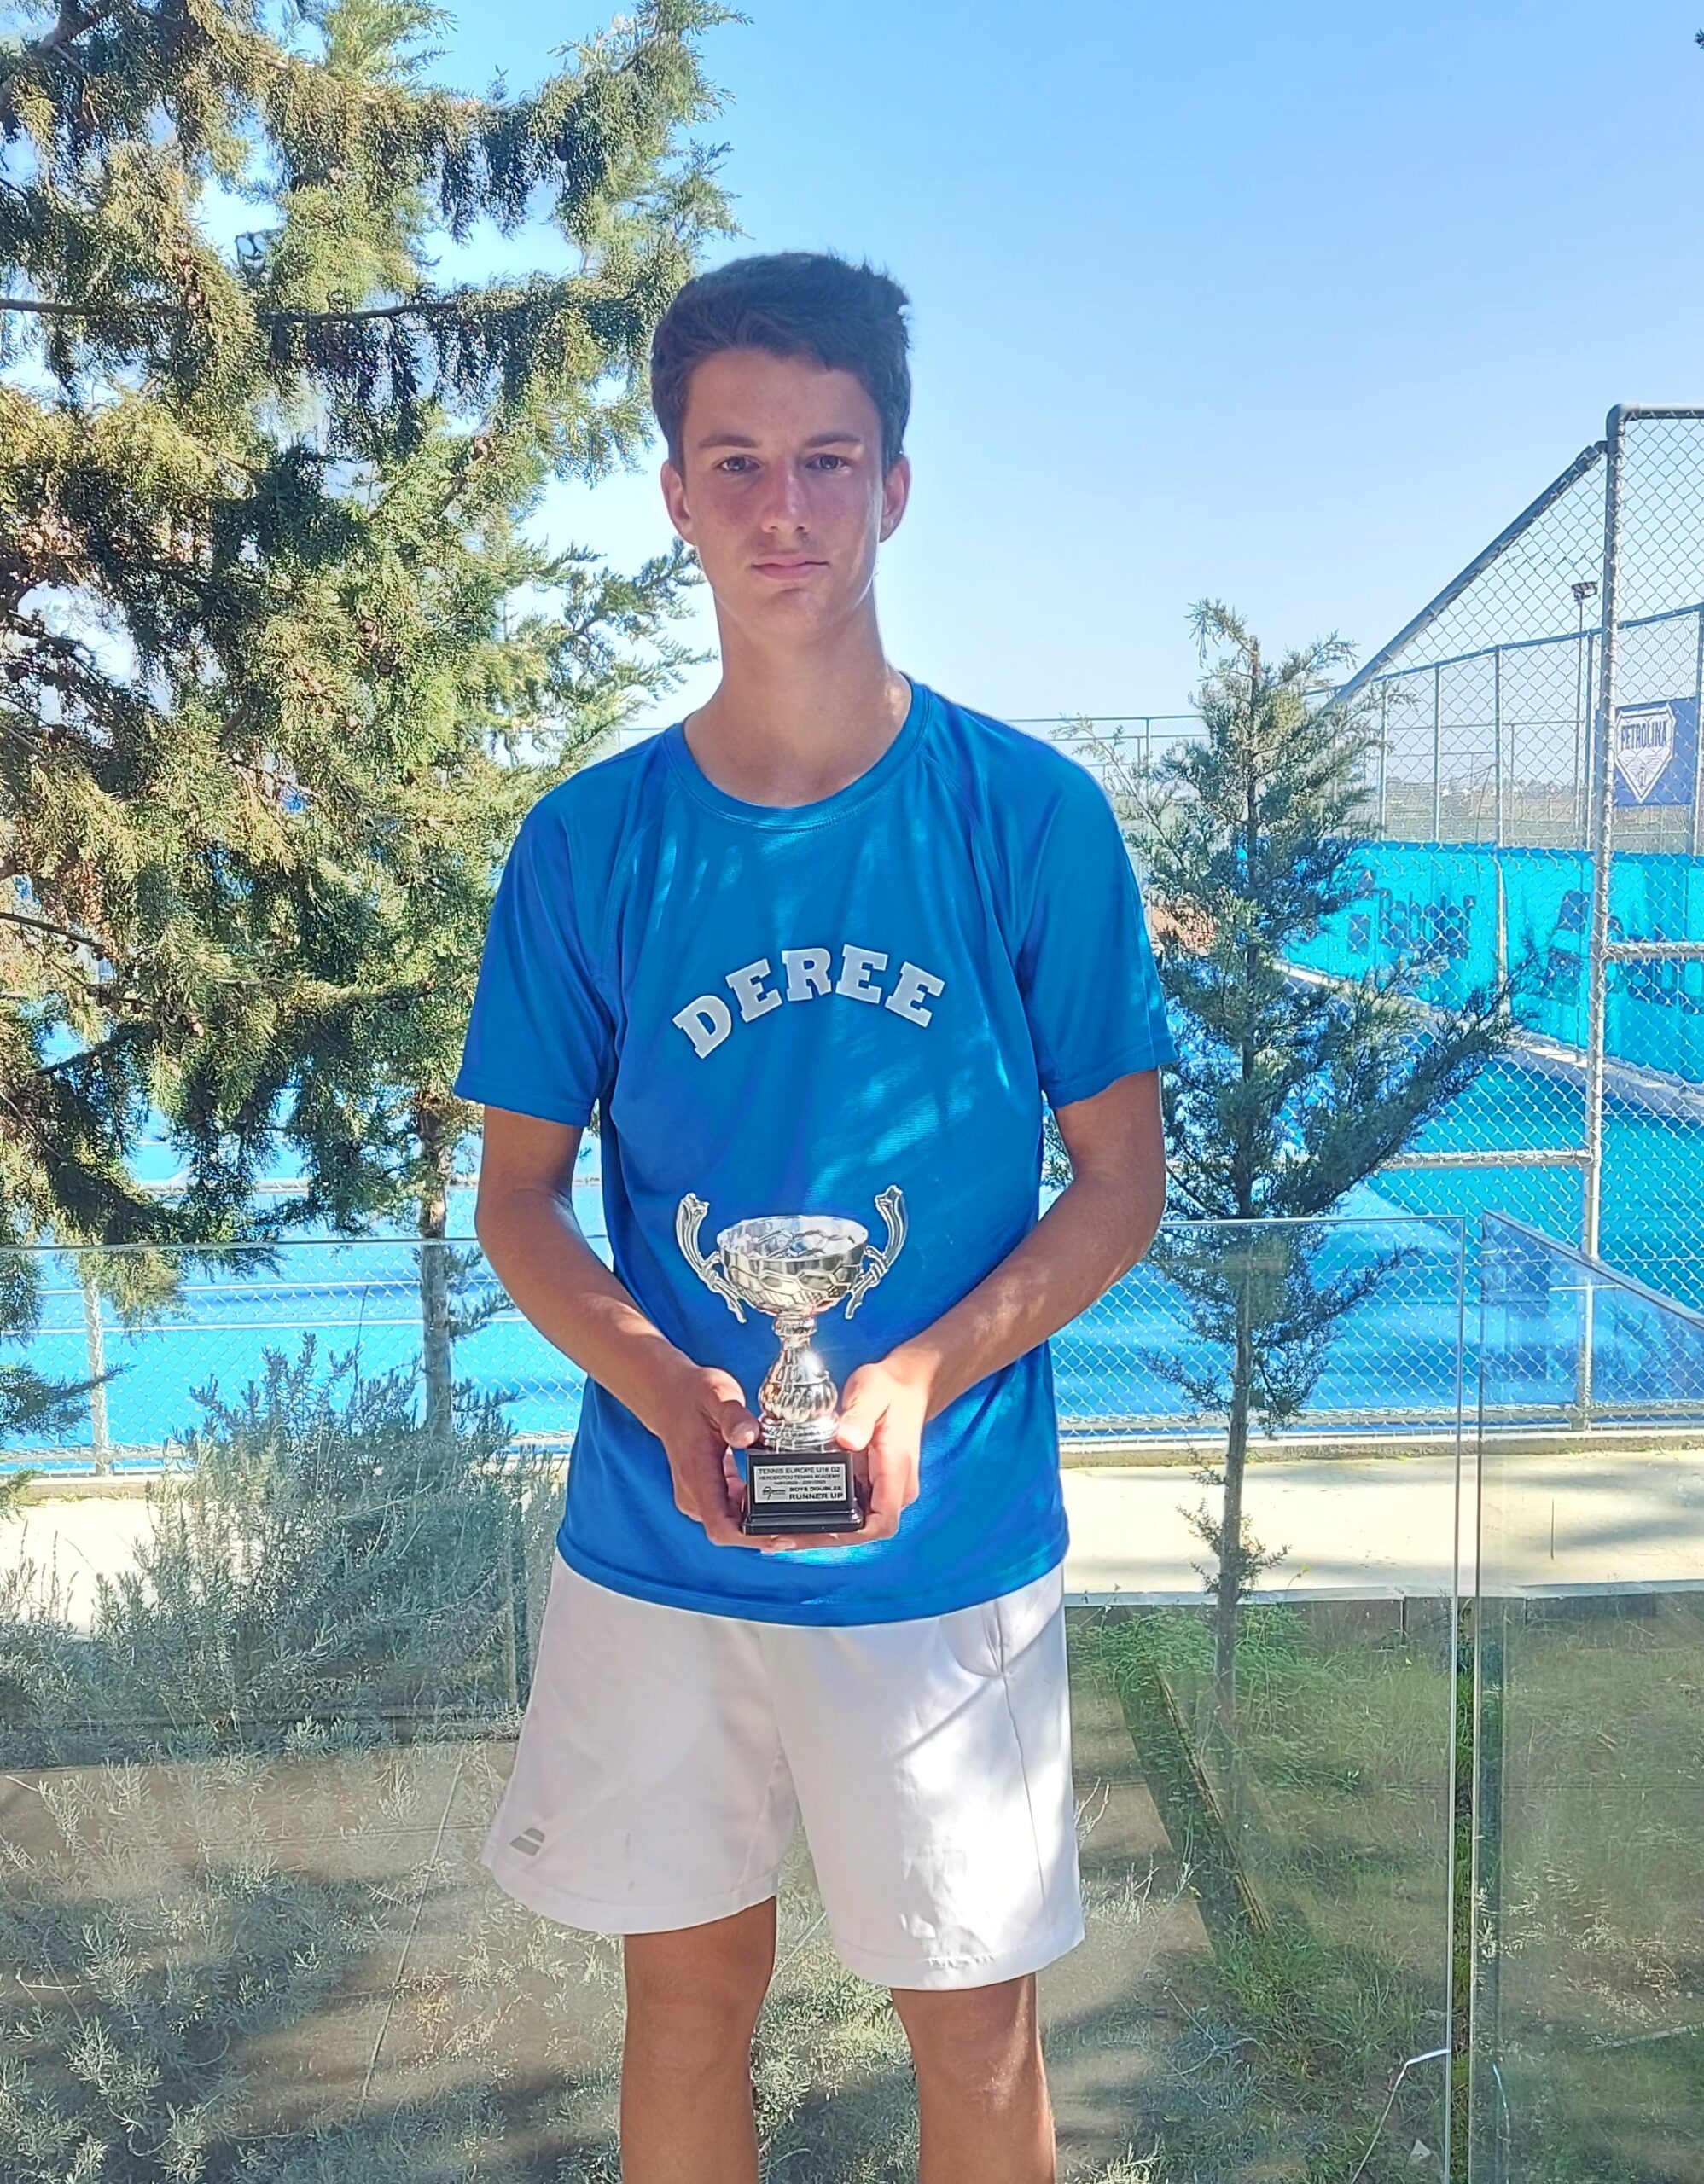 2η θέση στο διπλό για τον Γιάννη Σακκά στο Διεθνές Τουρνουά της Tennis Europe U16 στην Κύπρο!